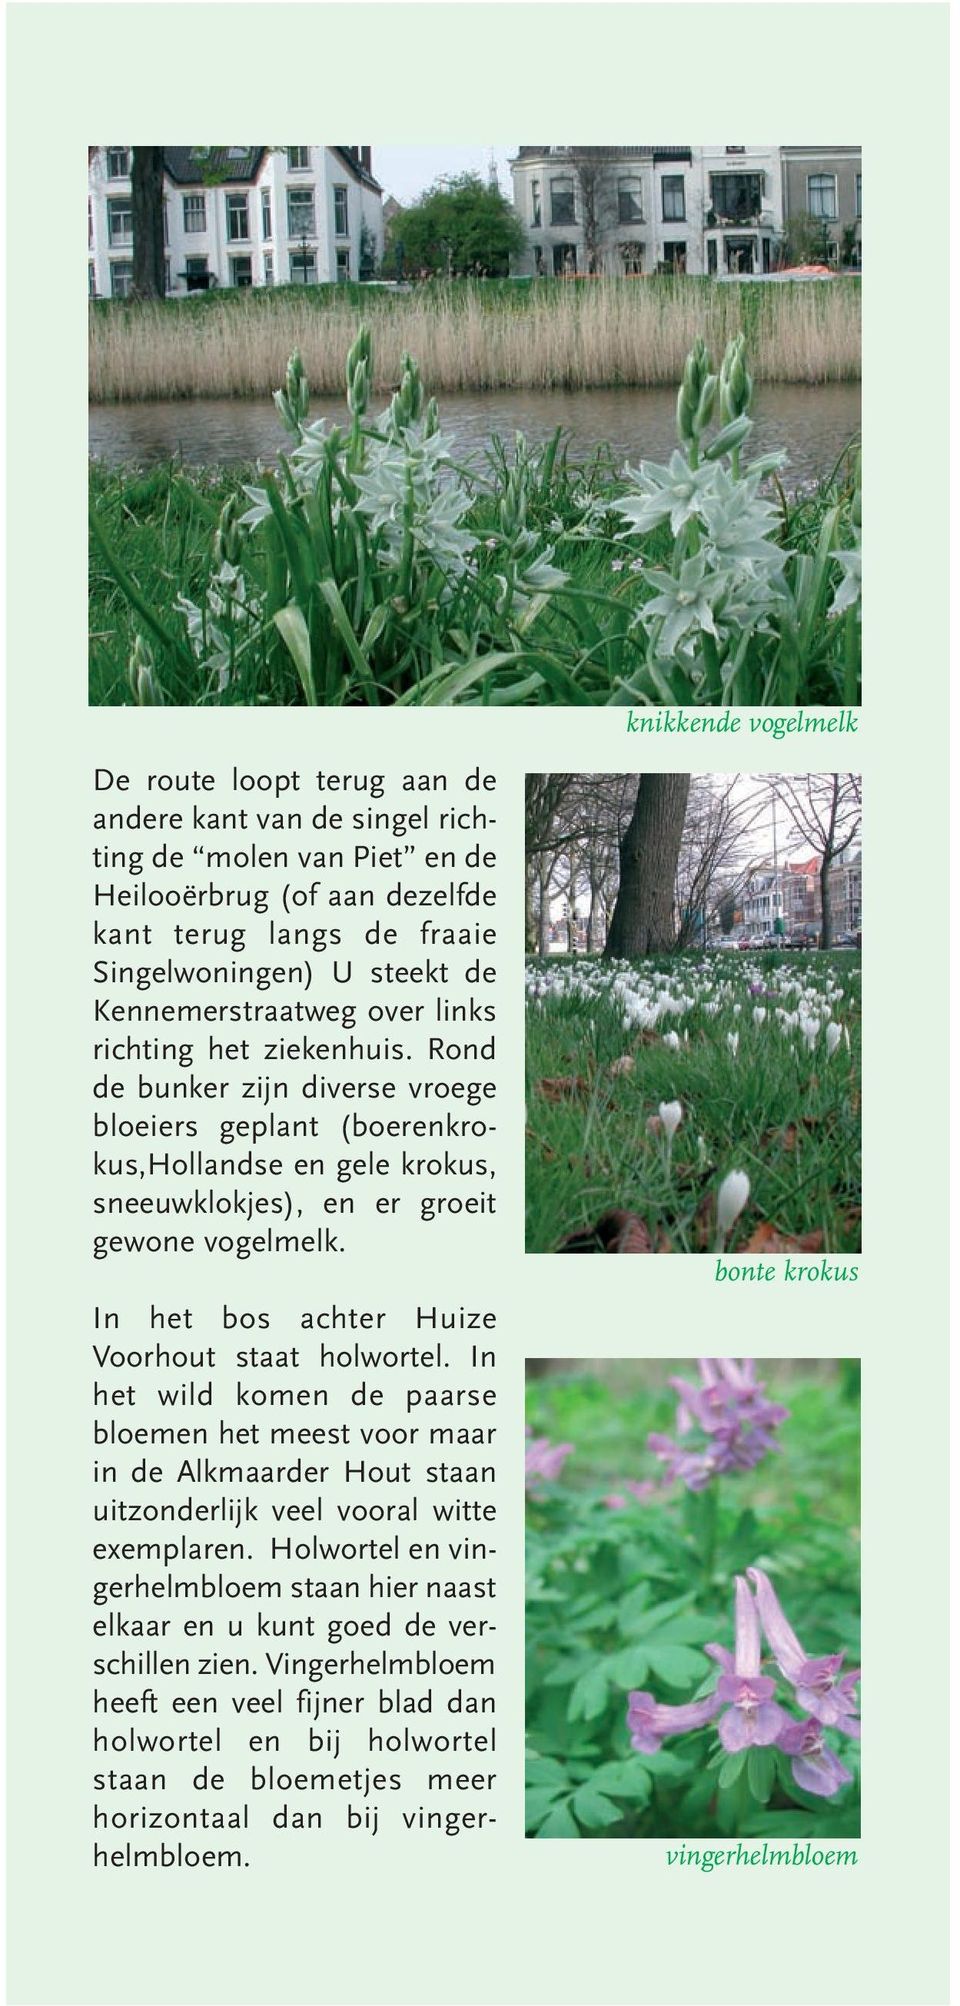 In het bos achter Huize Voorhout staat holwortel. In het wild komen de paarse bloemen het meest voor maar in de Alkmaarder Hout staan uitzonderlijk veel vooral witte exemplaren.